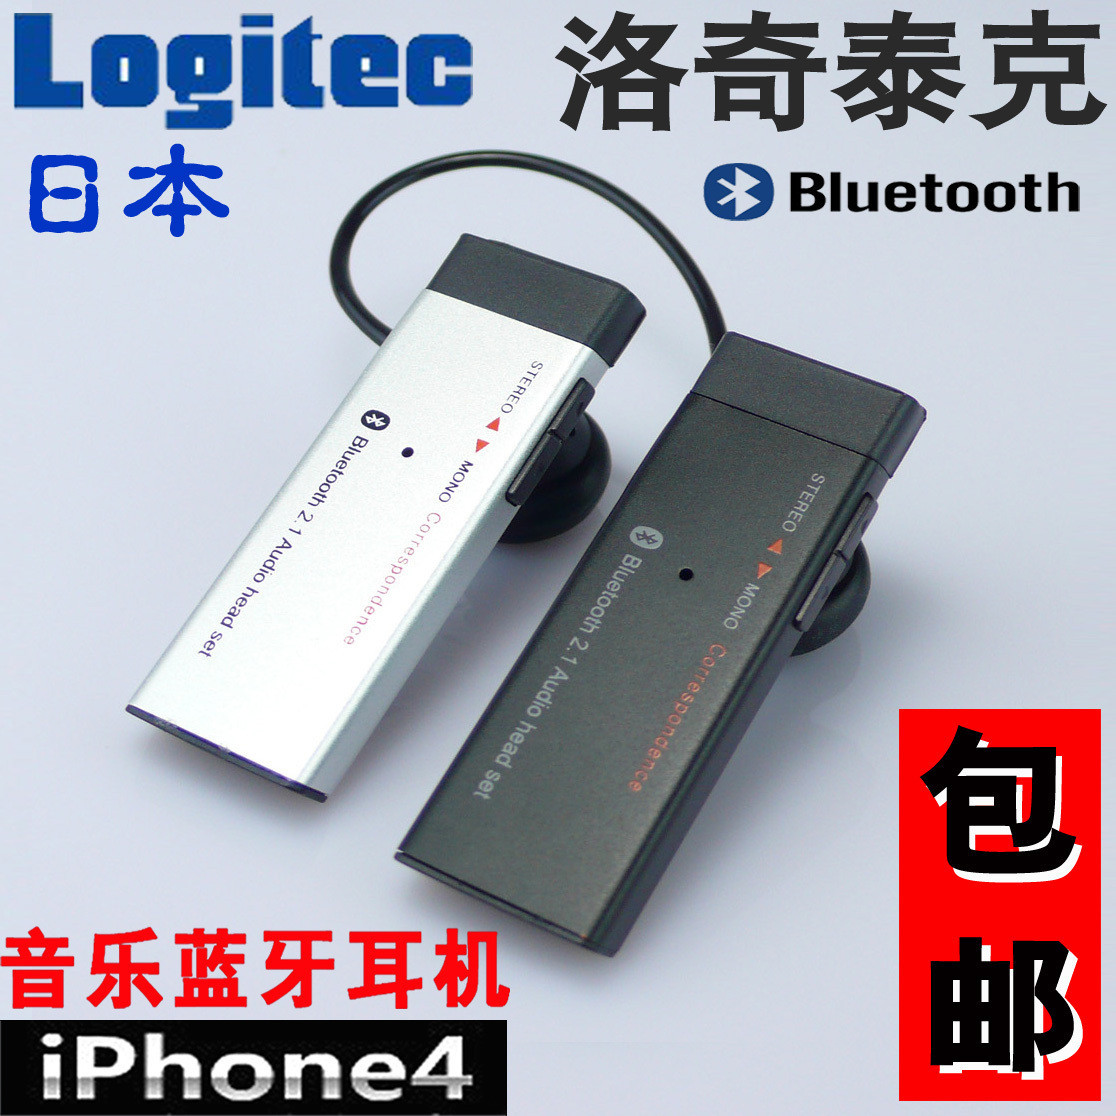 iphone4 3GS ipad htc 可匹配立体声 双耳音乐 蓝牙耳机